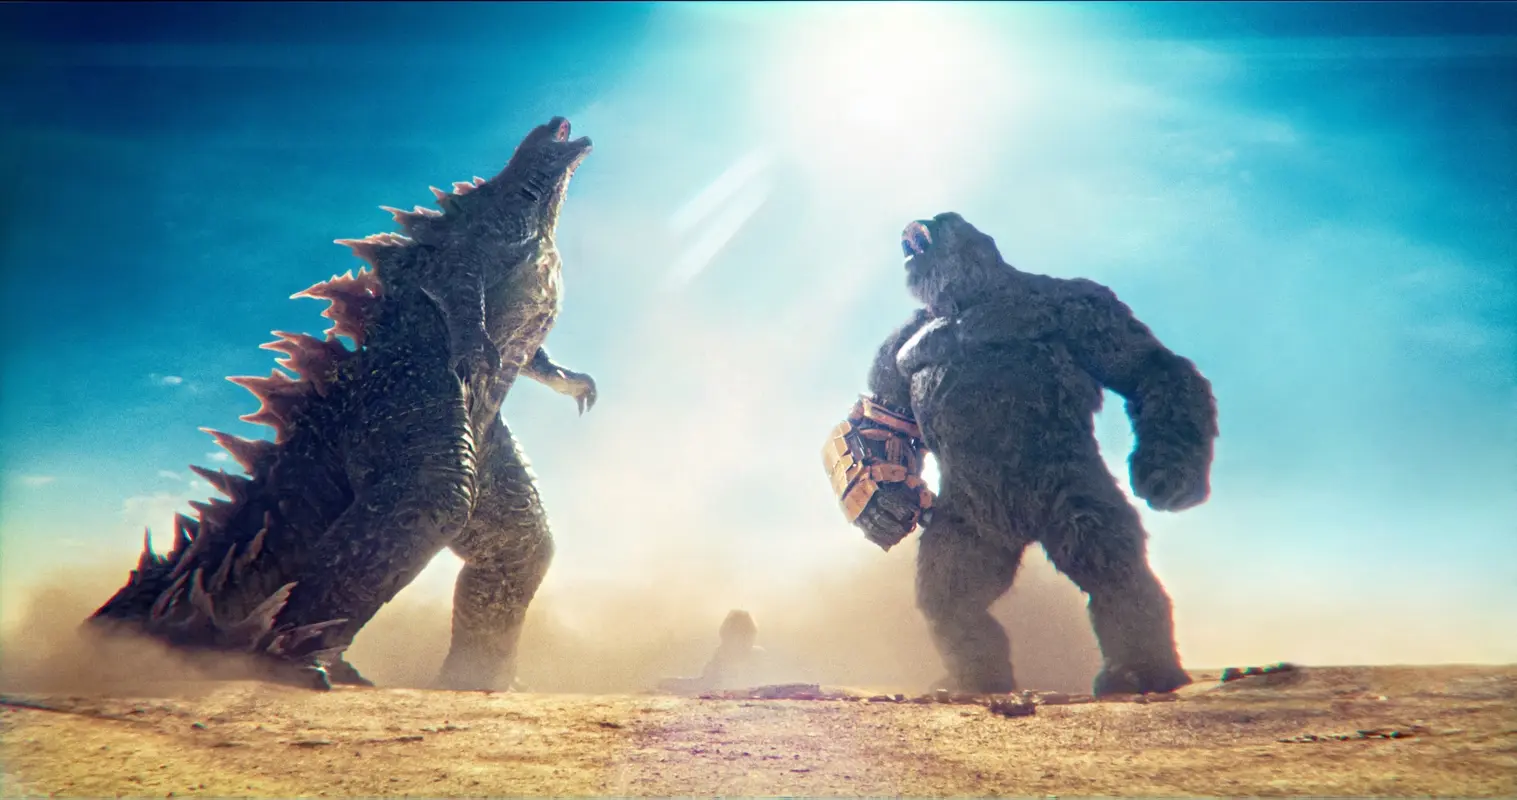 Recenze: Godzilla a Kong bez zábran. Místo japonské citlivosti tu máme hrdý hollywoodský spektákl